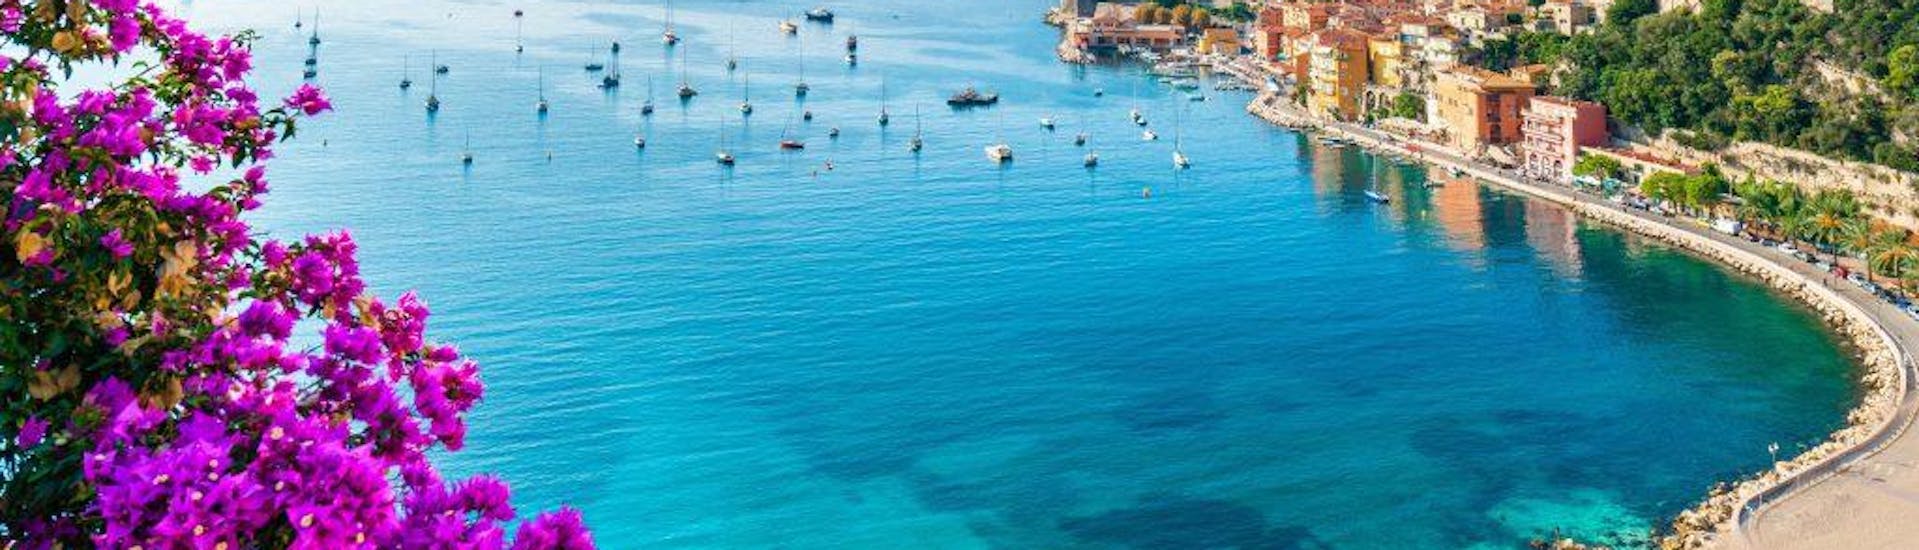 Très beau paysage avec une plage et des bateaux vu avec Glisse Evasion Côte d'Azur.